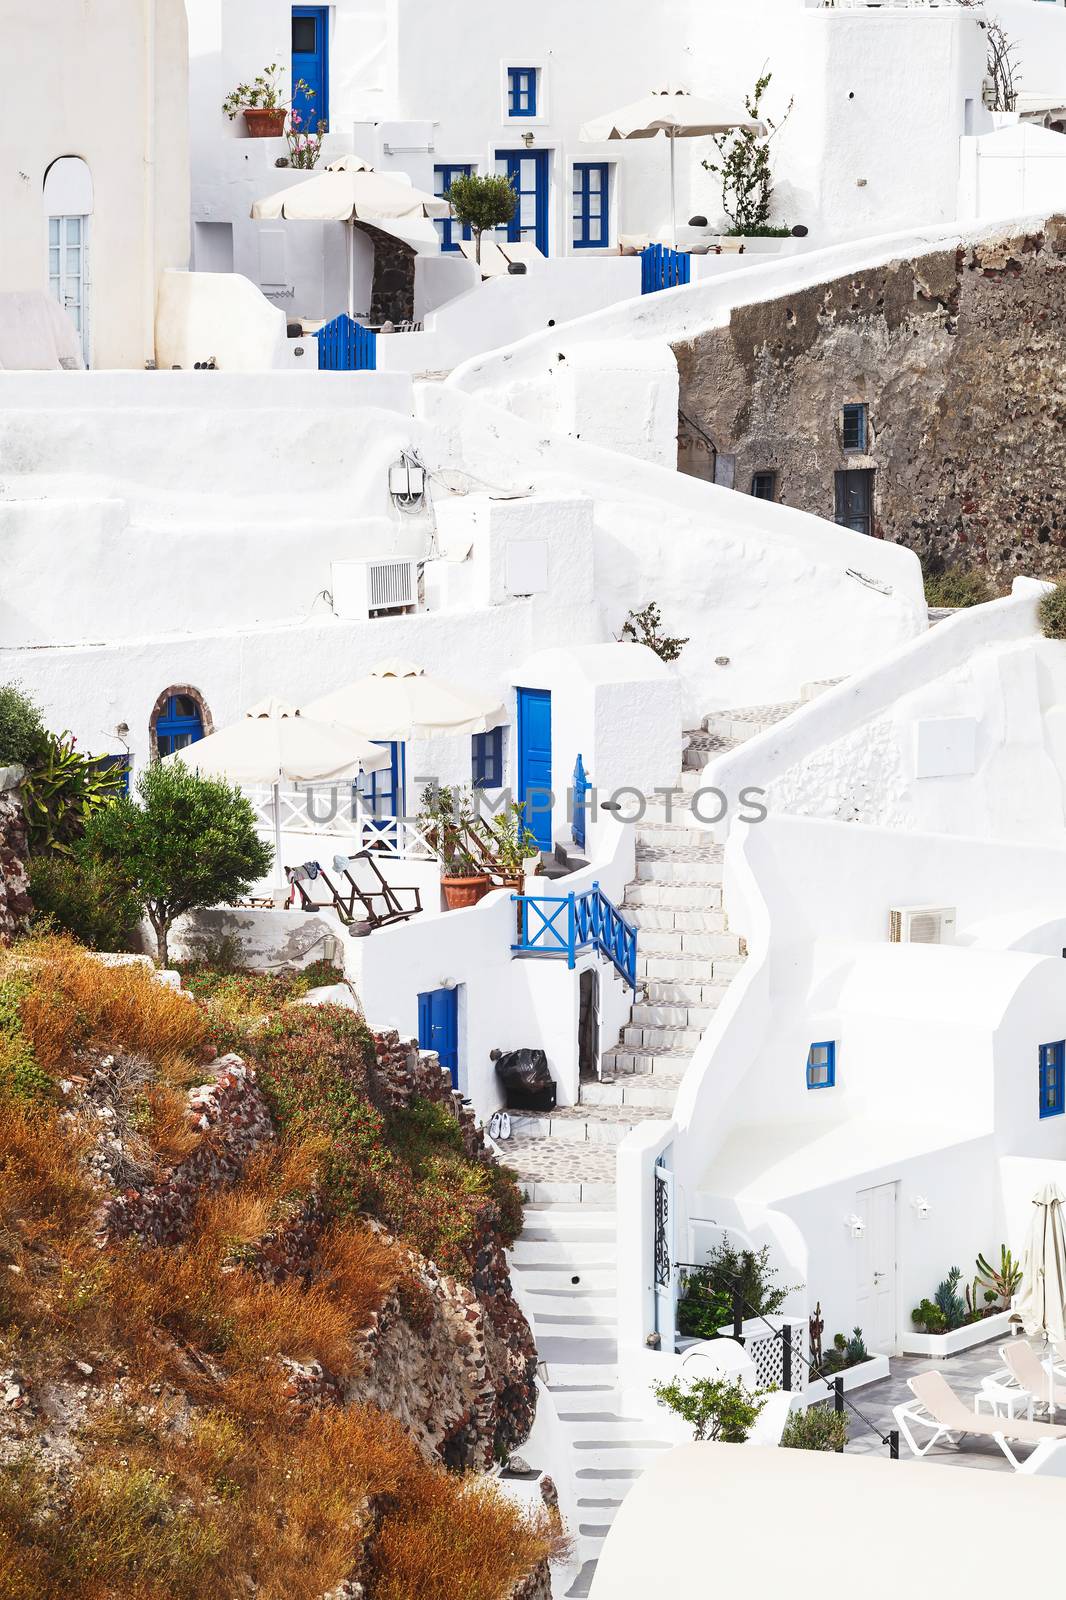 Cycladic houses and stairs, Oia, Santorini Island, Greecee by Slast20